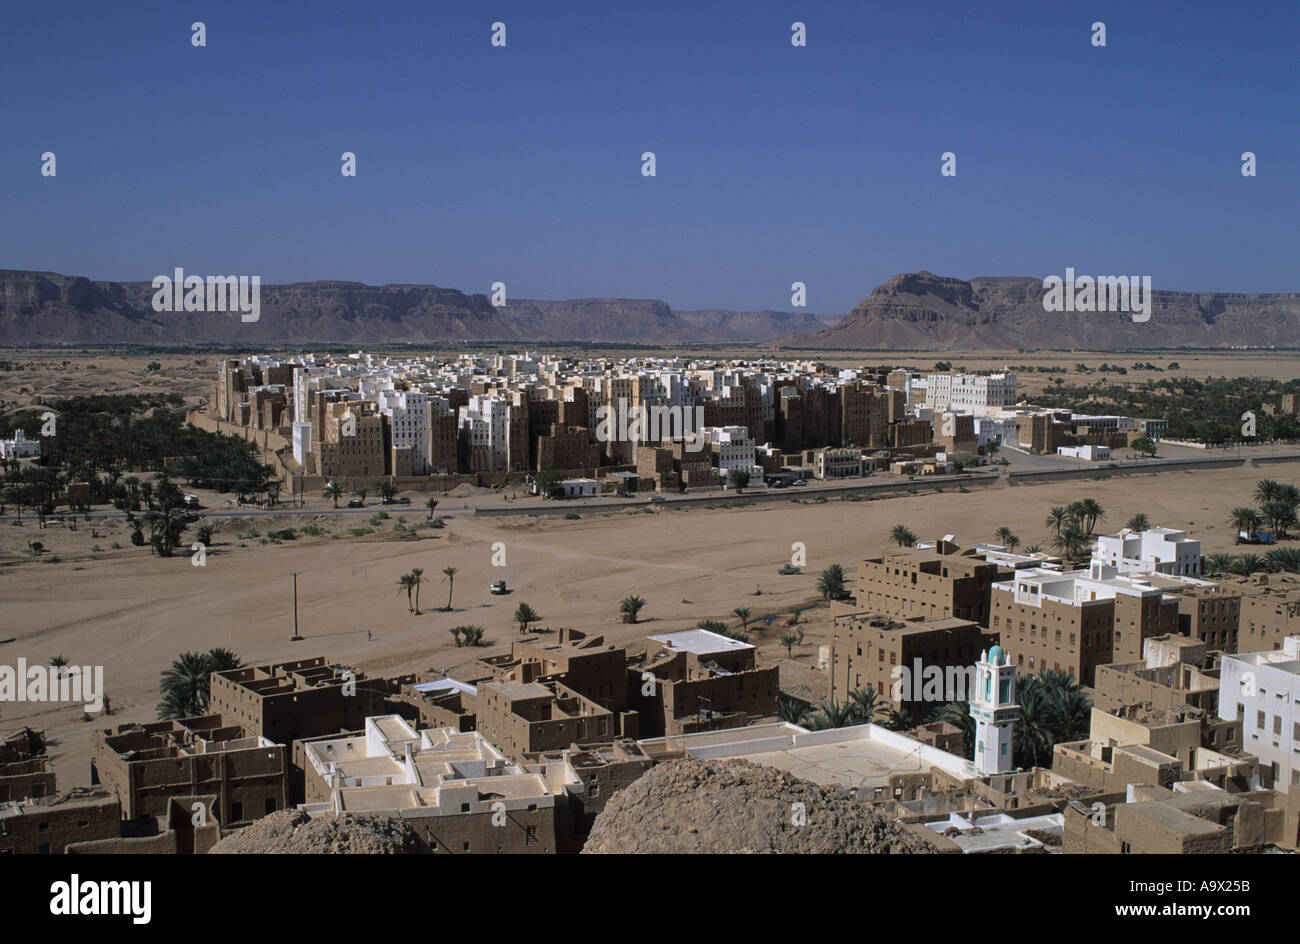 Shibam Wadi Hadramaut Yemen Mud brick skyscraper houses and city walls Stock Photo